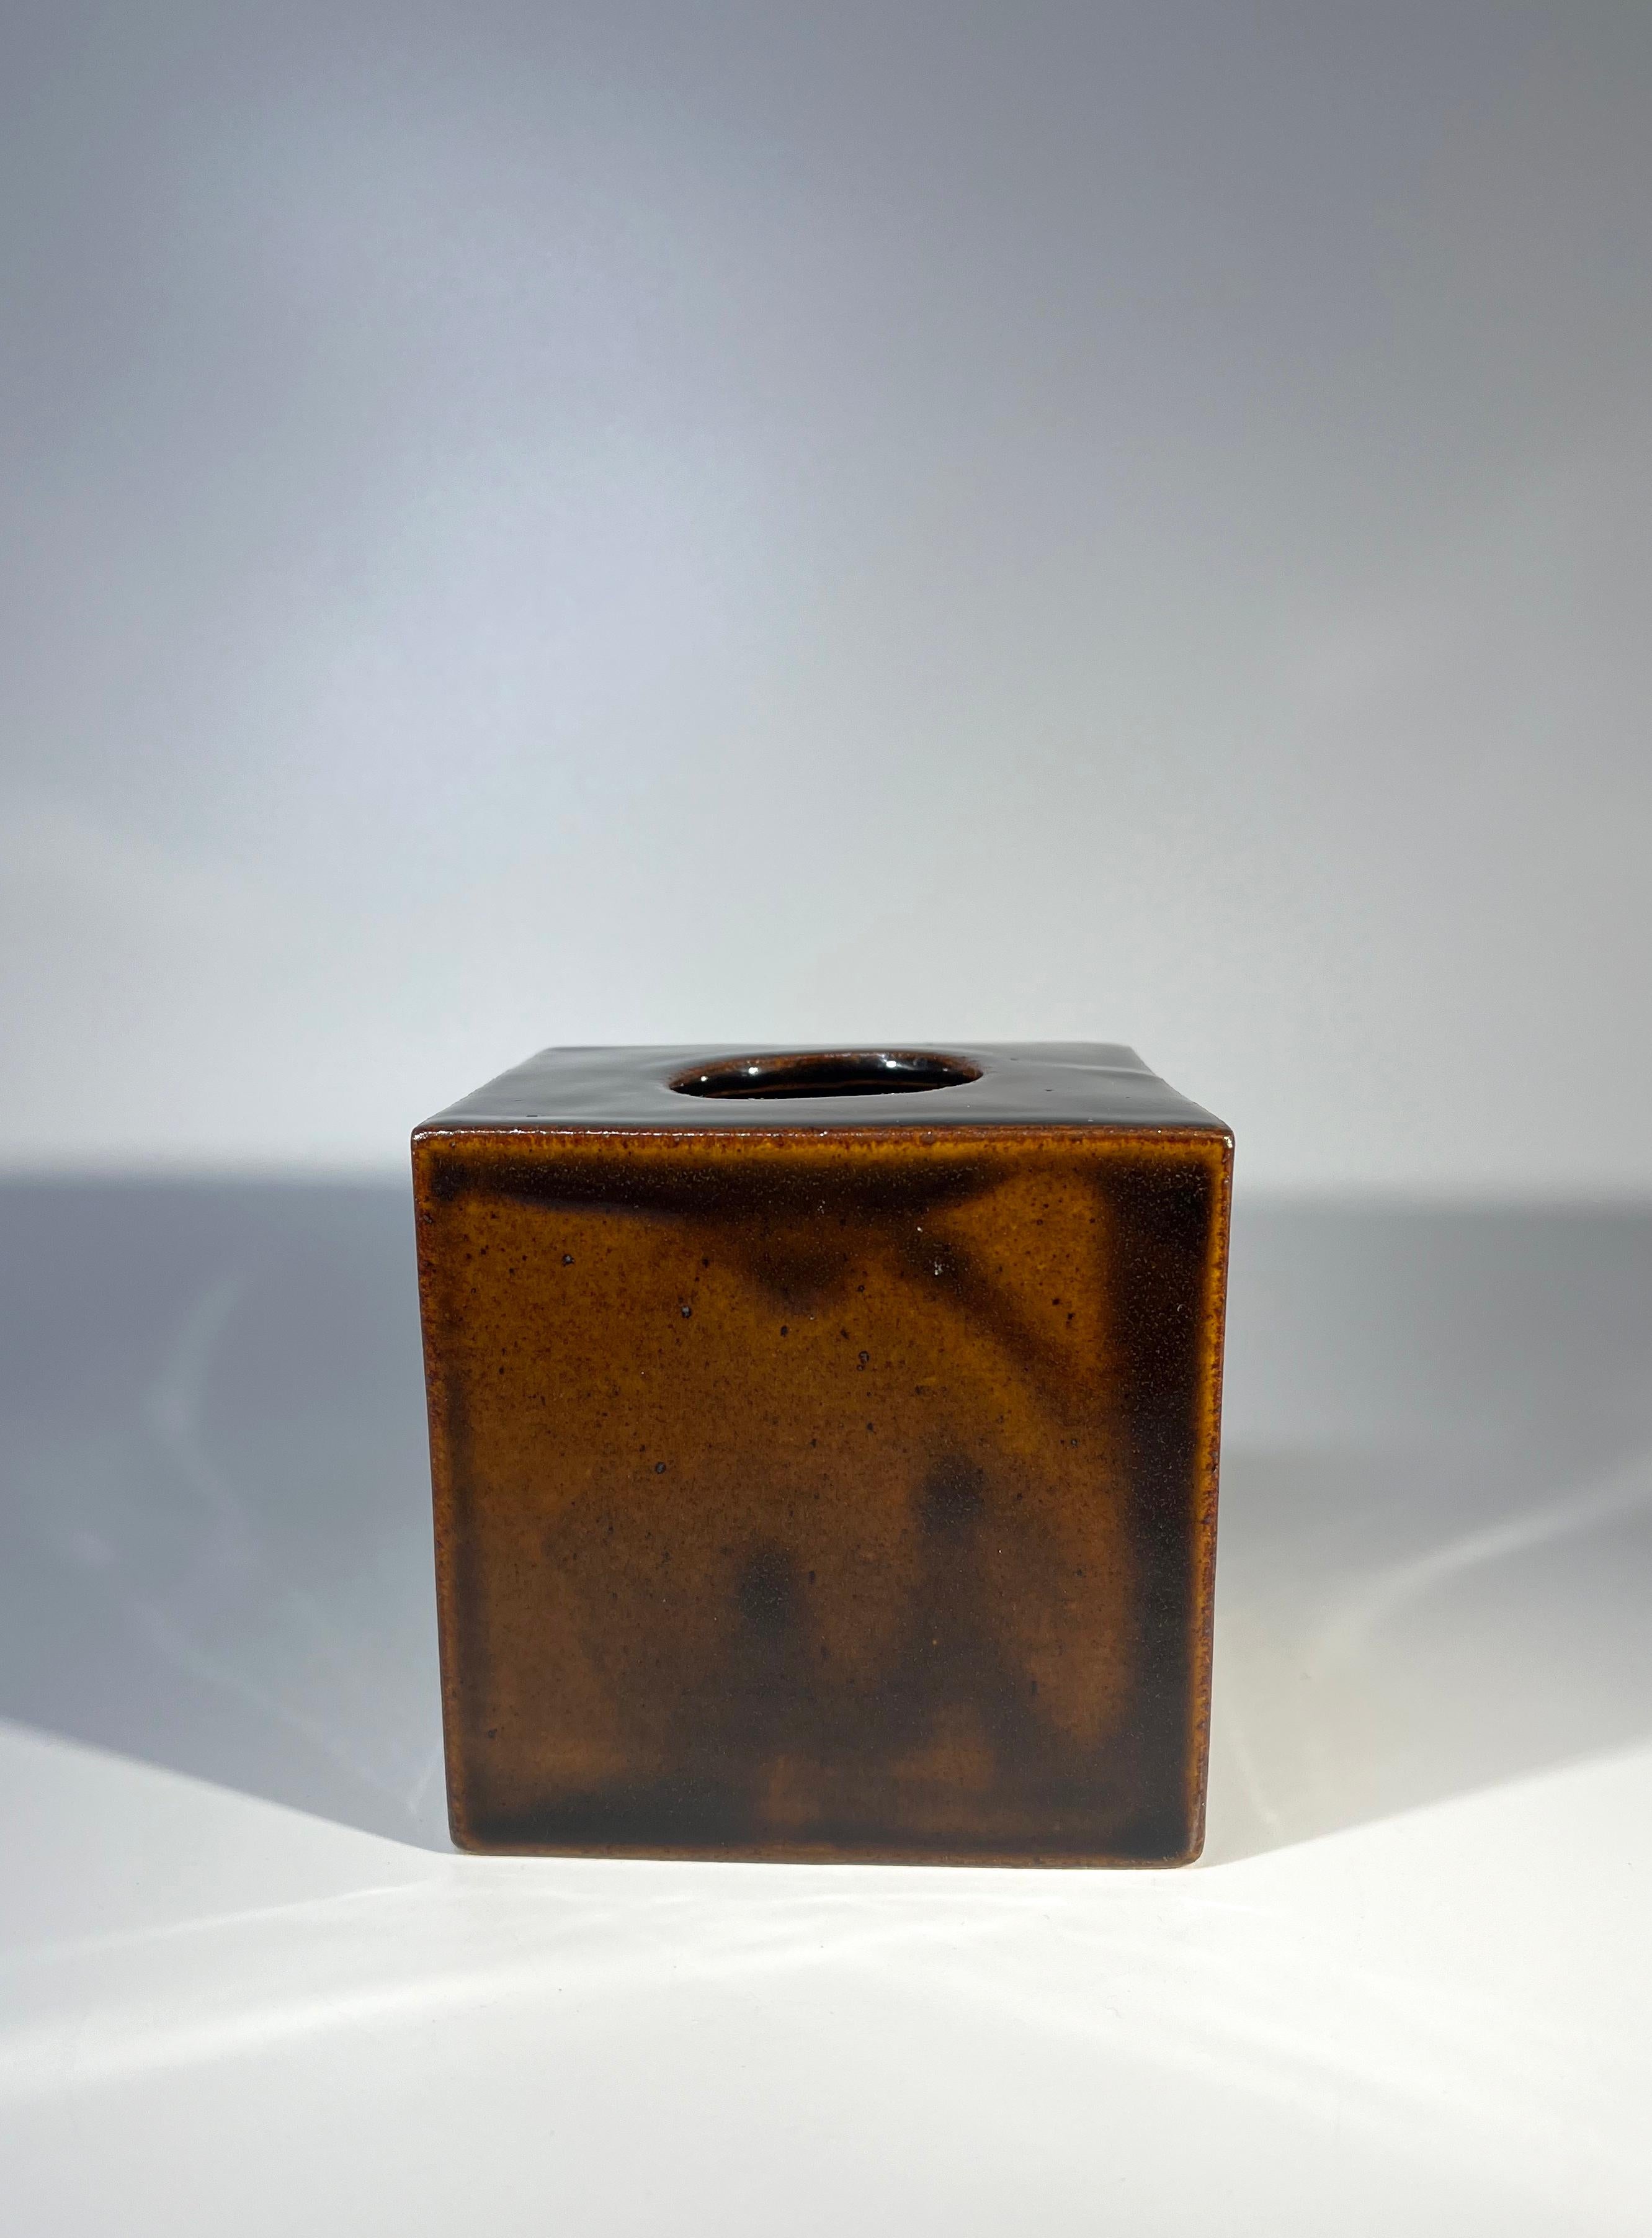 Vase cubique à l'émail caramel riche de Christine Konschak pour Knabstrup, Danemark
Design/One simple et efficace
Circa 1960-65
Signé CK Knabstrup et étiquette en papier originale sur la base.
Hauteur 3,5 pouces, Largeur 3,5 pouces, Profondeur 3,5